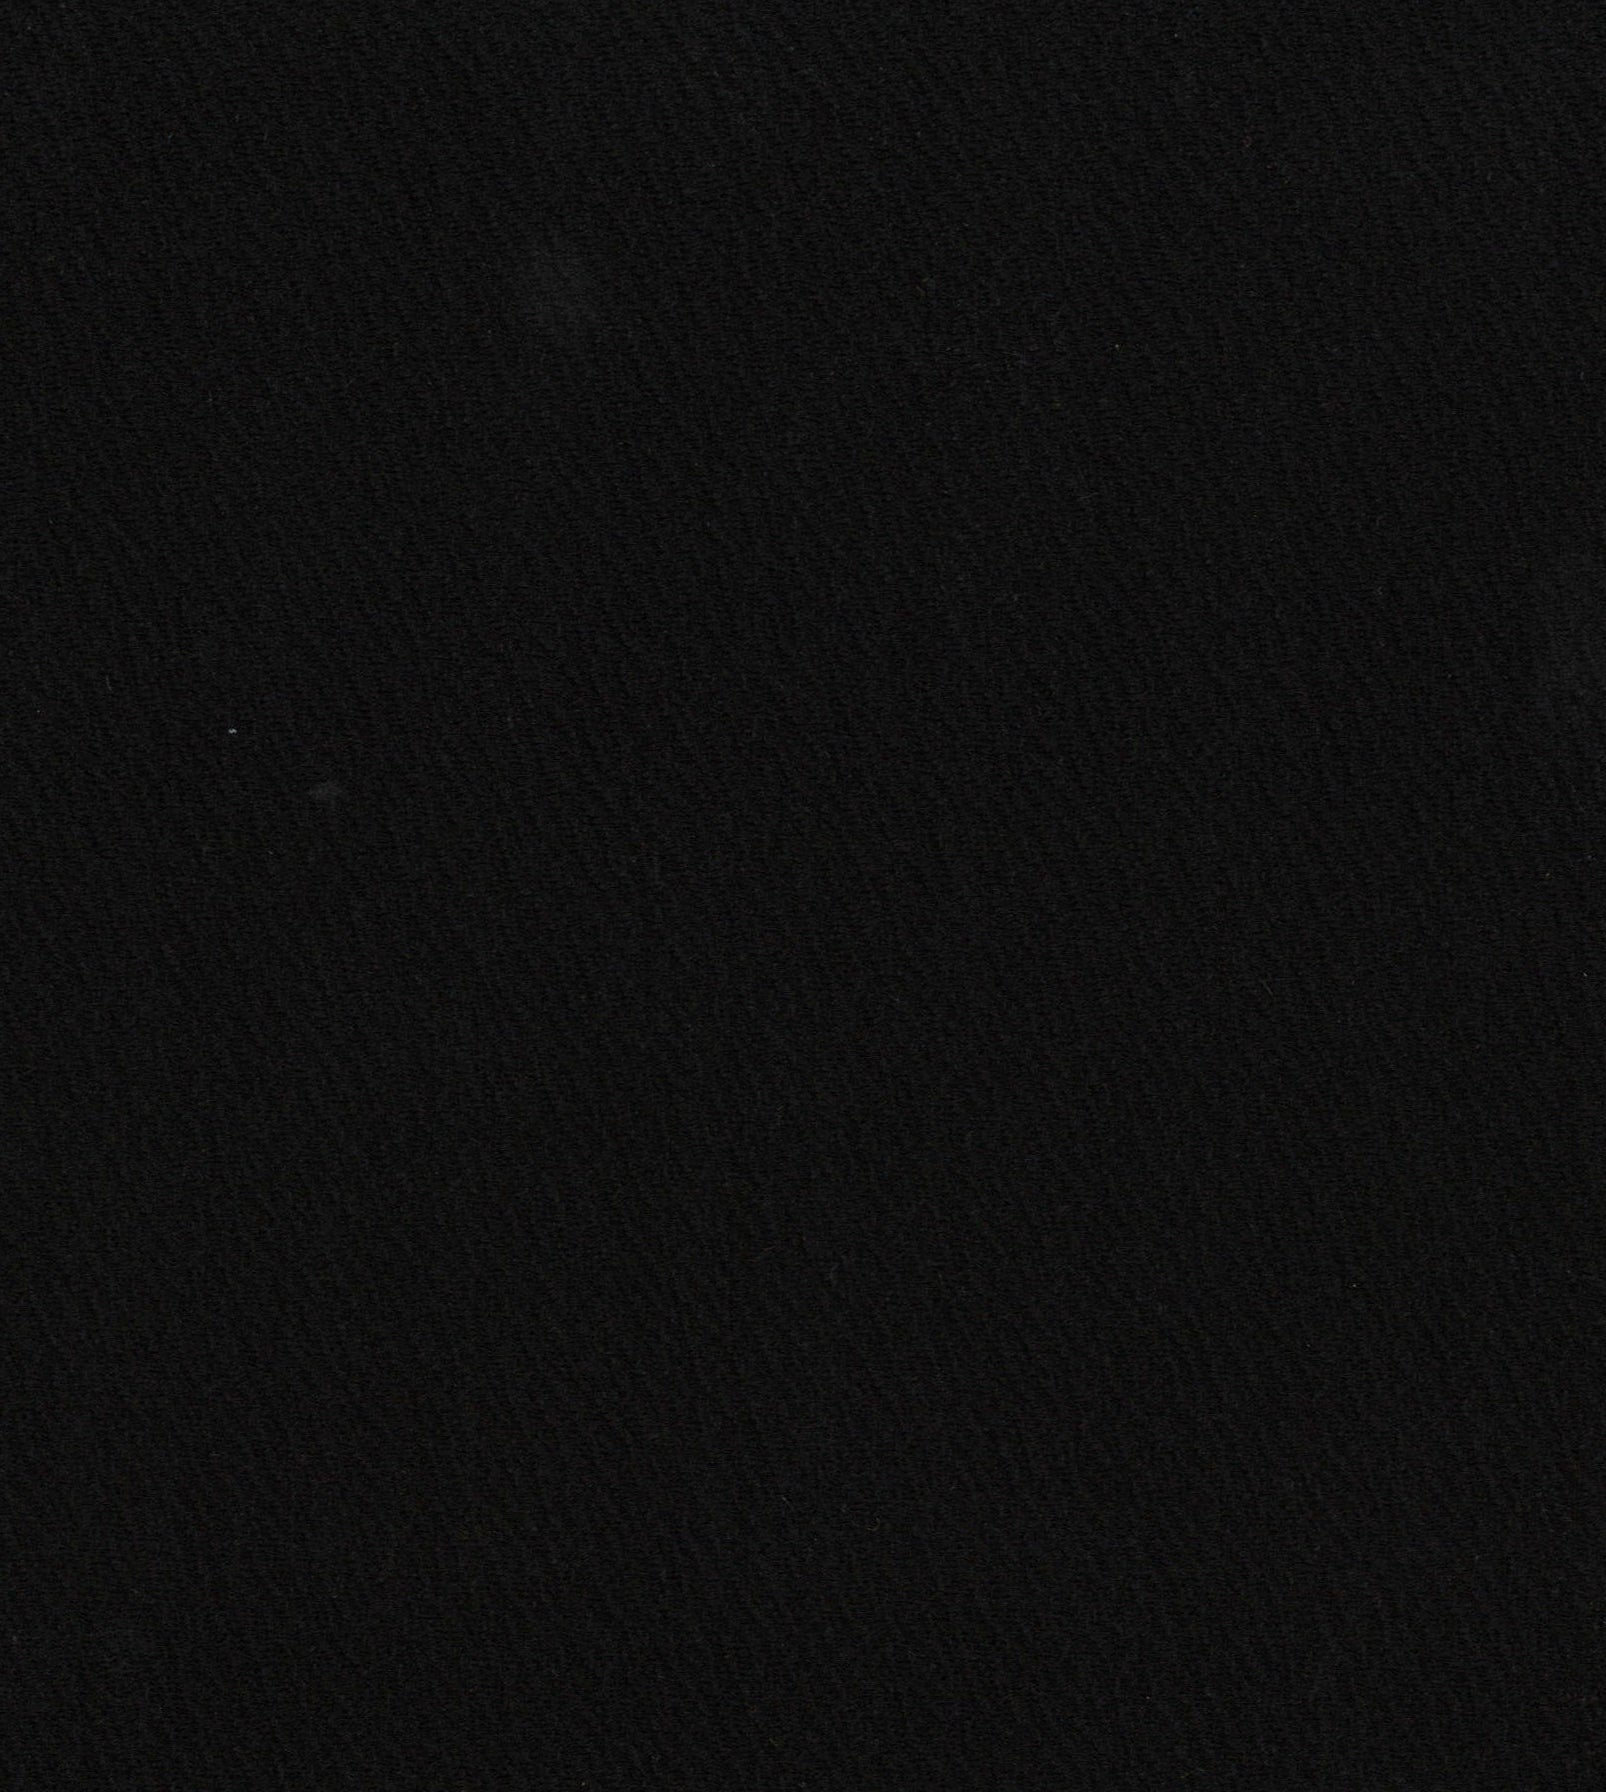 13018-07 Black Riverpool Jacquard Plain Dyed Blend 260g/yd 58&quot; black blend jacquard knit plain dyed polyester spandex Solid Color, Jacquard - knit fabric - woven fabric - fabric company - fabric wholesale - fabric b2b - fabric factory - high quality fabric - hong kong fabric - fabric hk - acetate fabric - cotton fabric - linen fabric - metallic fabric - nylon fabric - polyester fabric - spandex fabric - chun wing hing - cwh hk - fabric worldwide ship - 針織布 - 梳織布 - 布料公司- 布料批發 - 香港布料 - 秦榮興